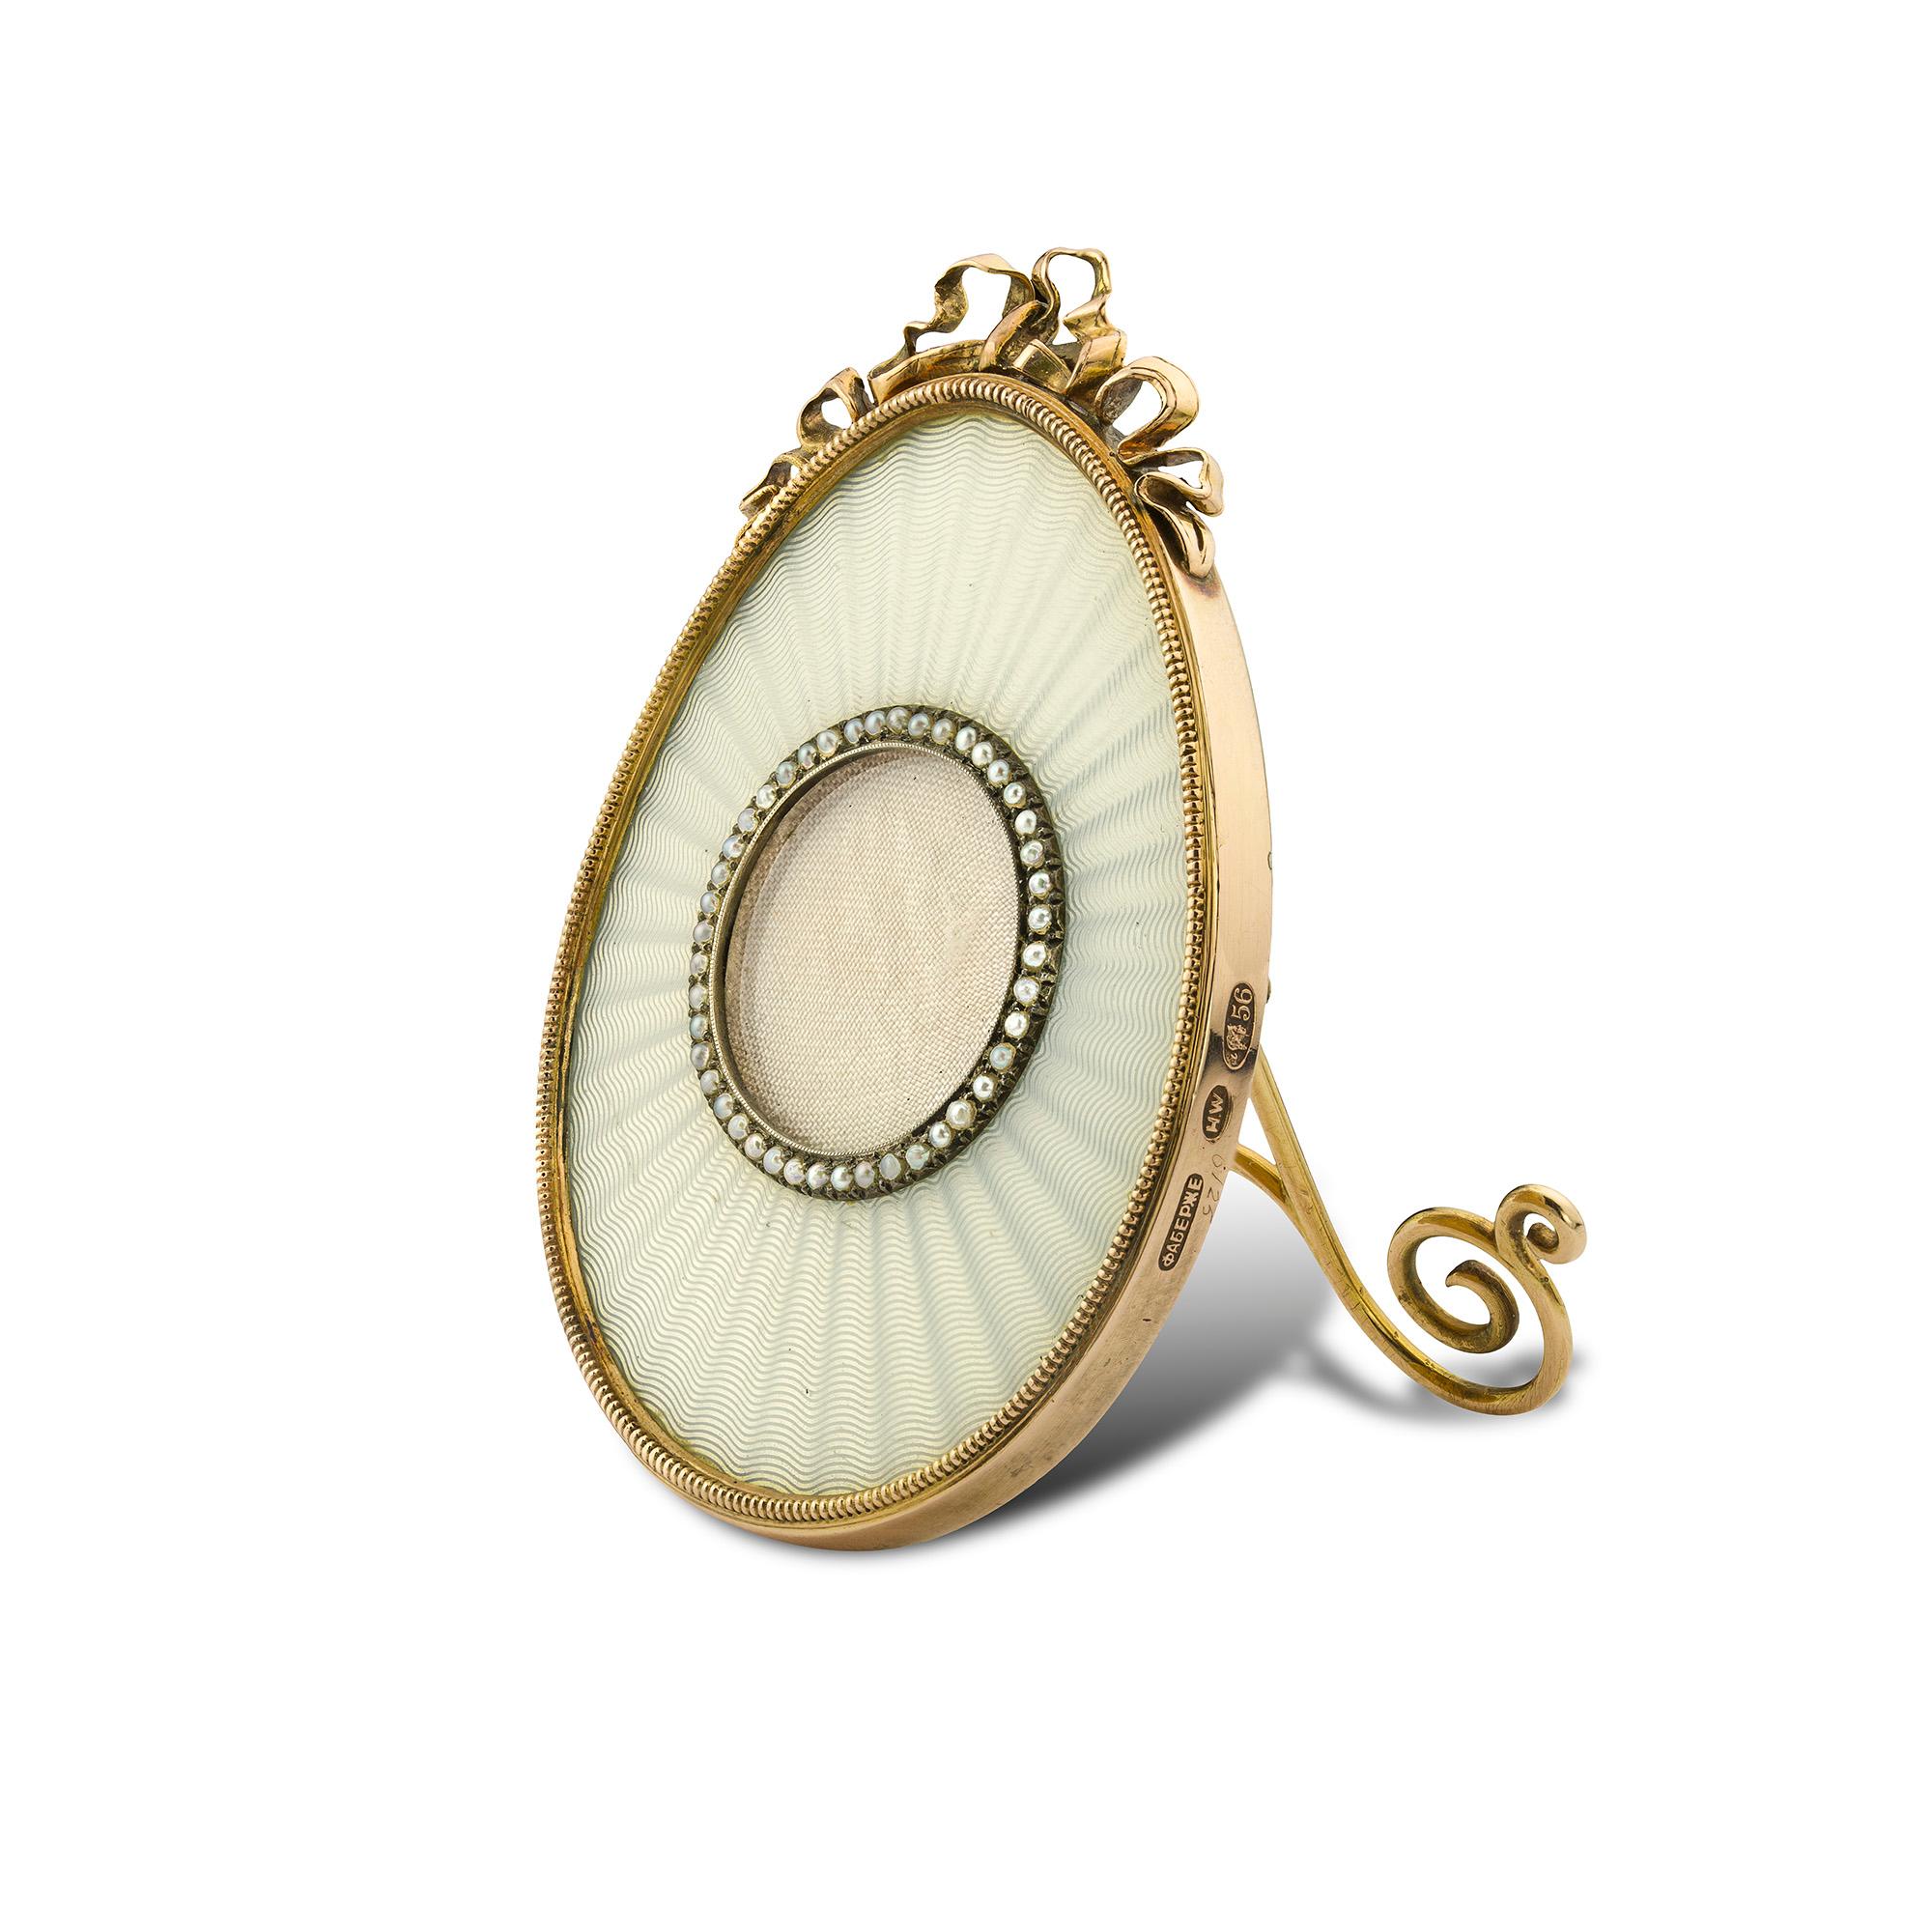 Ein eiförmiger Miniaturrahmen von Fabergé aus weißem Email, mit durchscheinendem Email auf guillochiertem Grund, mit einer Bildöffnung, die von 40 Perlen in einer silbernen Fassung umgeben ist, der äußere Rand aus Gelbgold mit einem Band- und